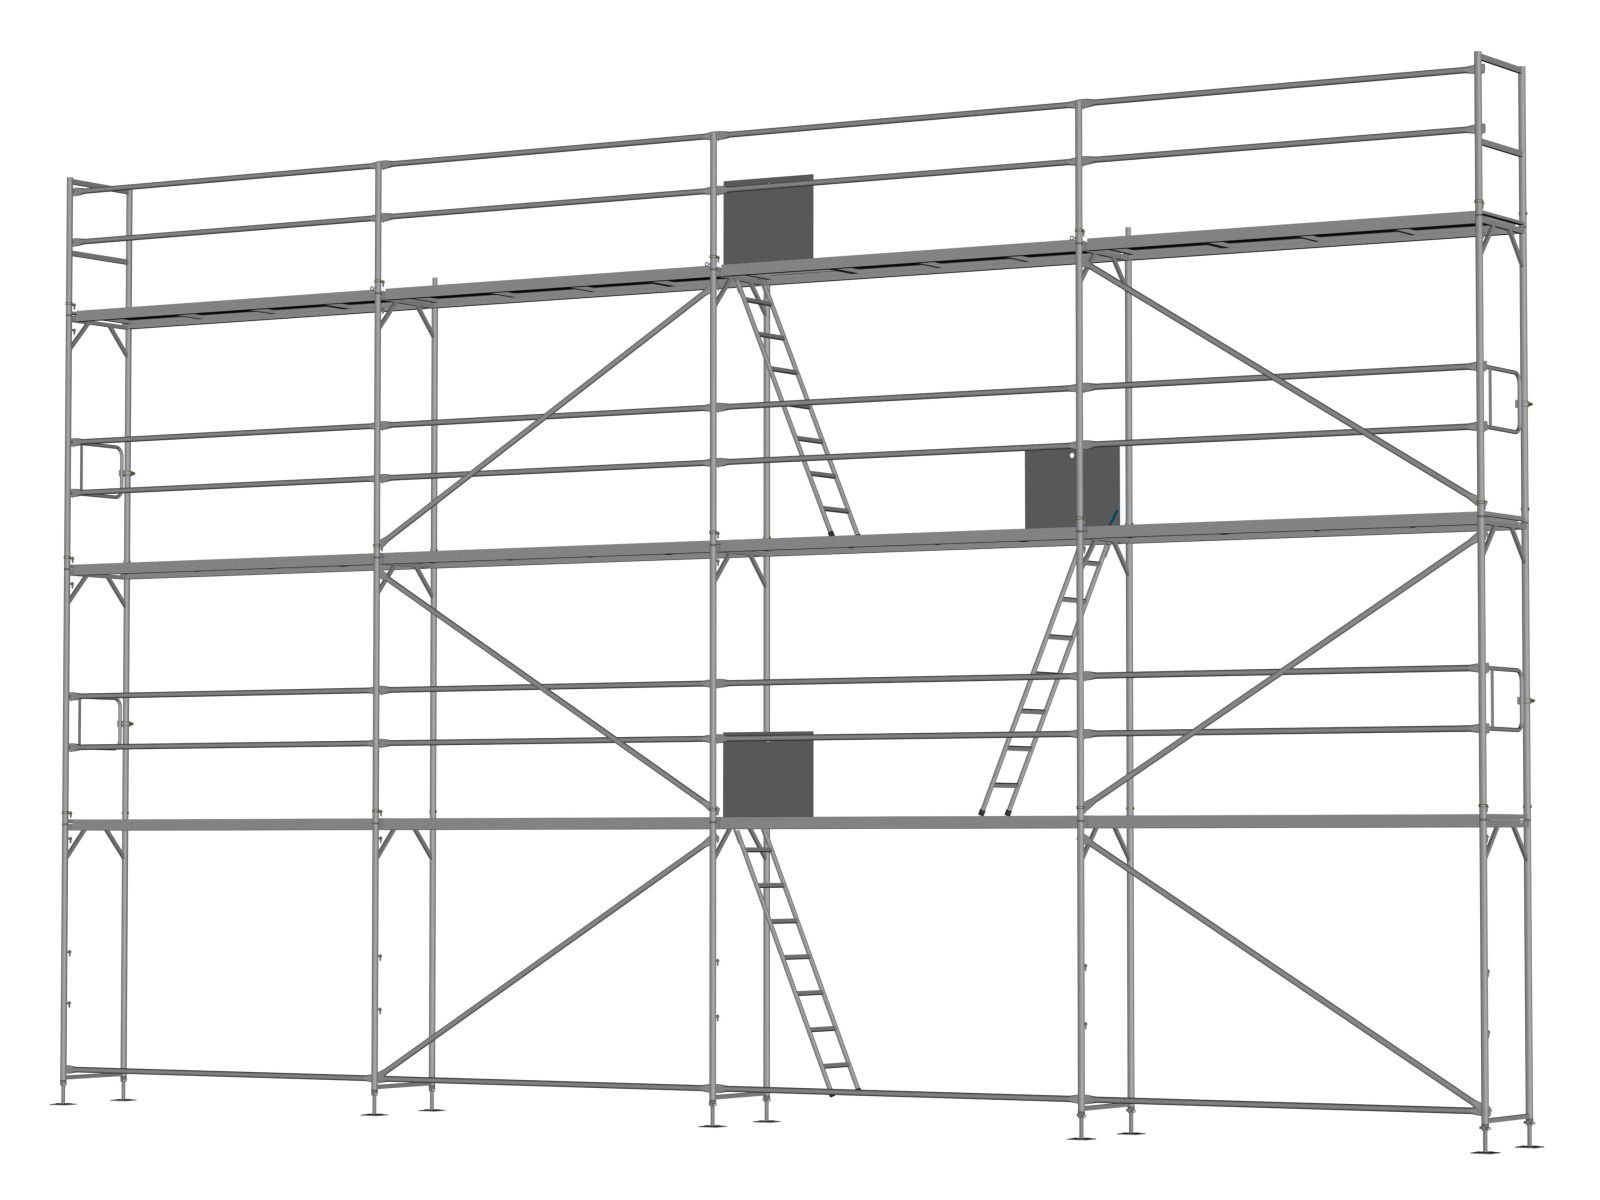 Stahl Traufseitengerüst 96 qm - 3,0 m Felder - 12 m lang - 8 m Arbeitshöhe - Basis-Gerüst inkl. Aufstieg & Befestigung